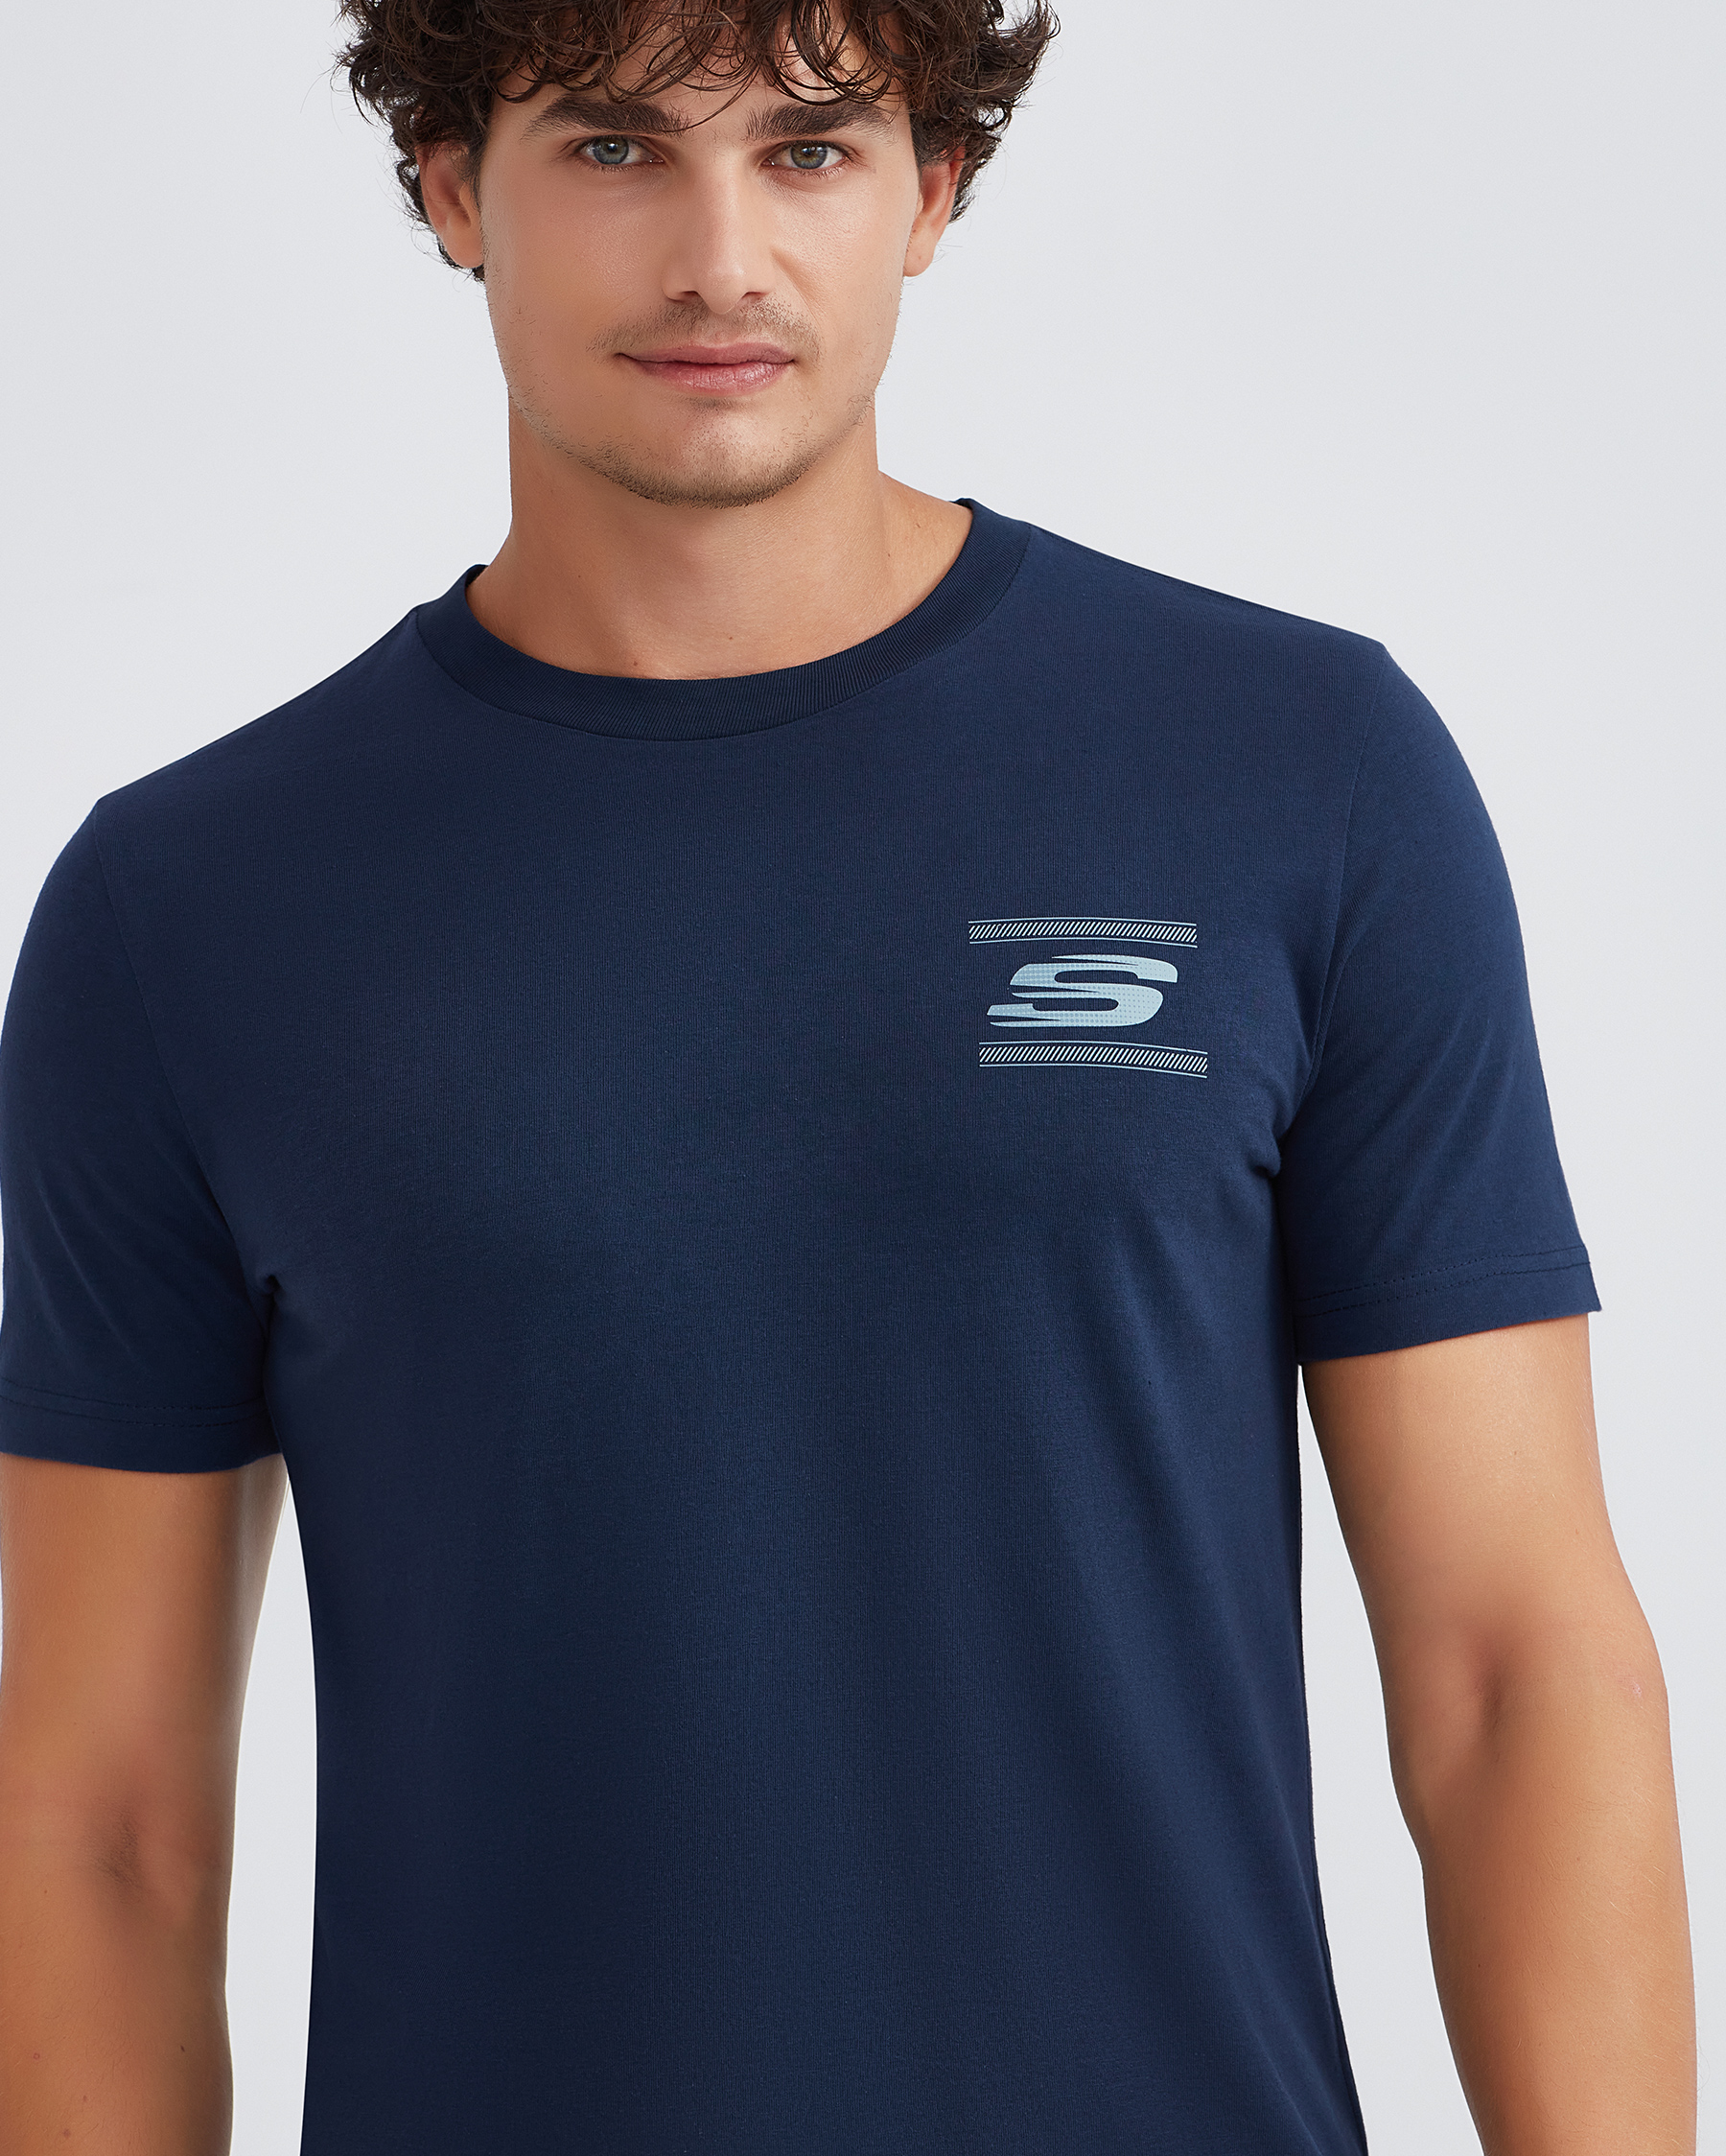 Skechers M Graphic Tee Crew Neck T-shirt Erkek Lacivert Tshirt S232339-410